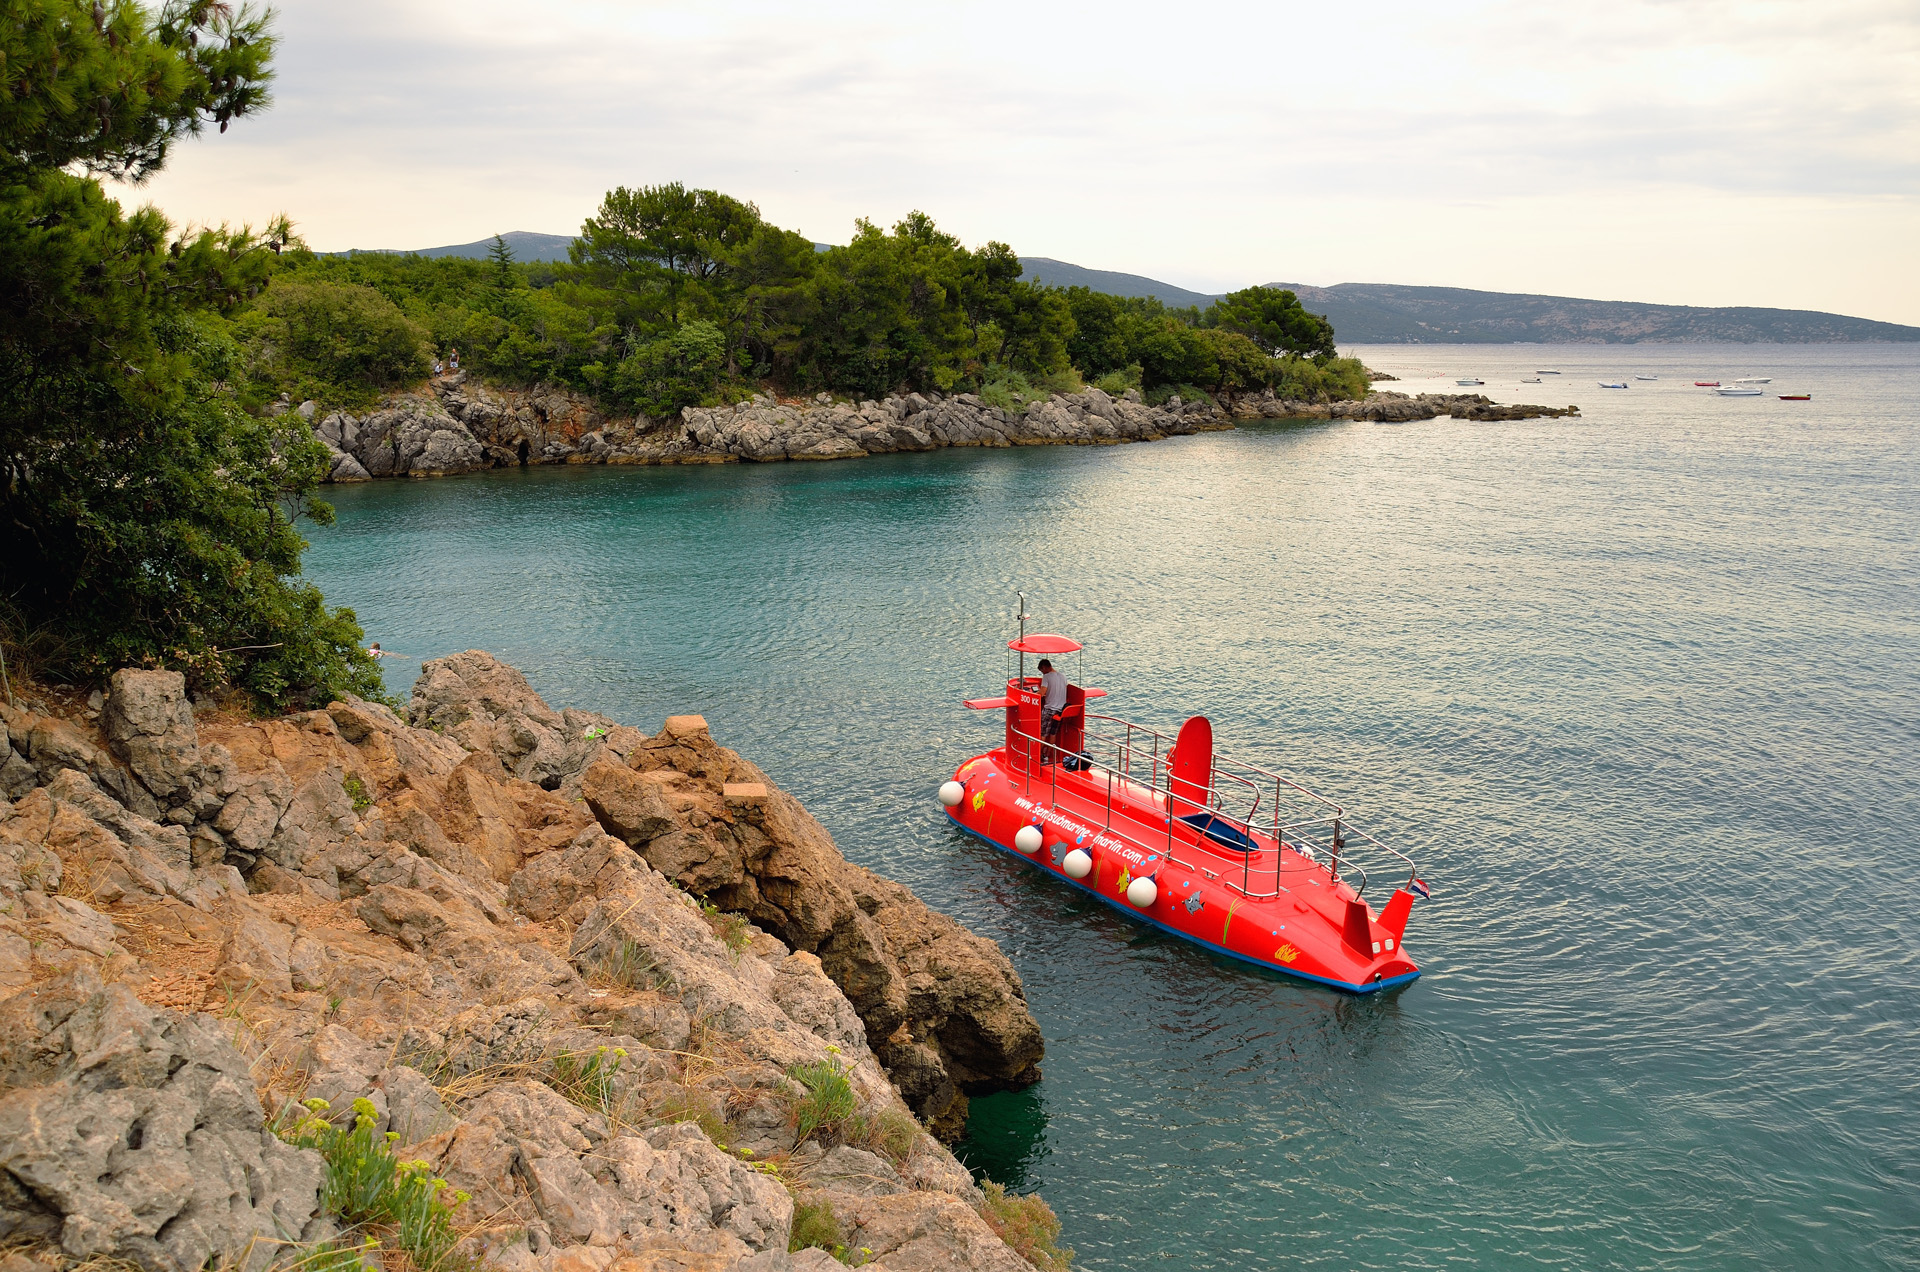 Solche U-Boote sehen wir seit heuer immer öfter an der kroatischen Küste. Man kann damit Ausflüge bei Tag und auch am Abend machen. Unterhalb der Wasserlinie befinden sich große Glasfenster, durch die man die Meereswelt betrachten kann. Semi-Submarine nennt es sich selbst, denn es taucht nie ganz unter...